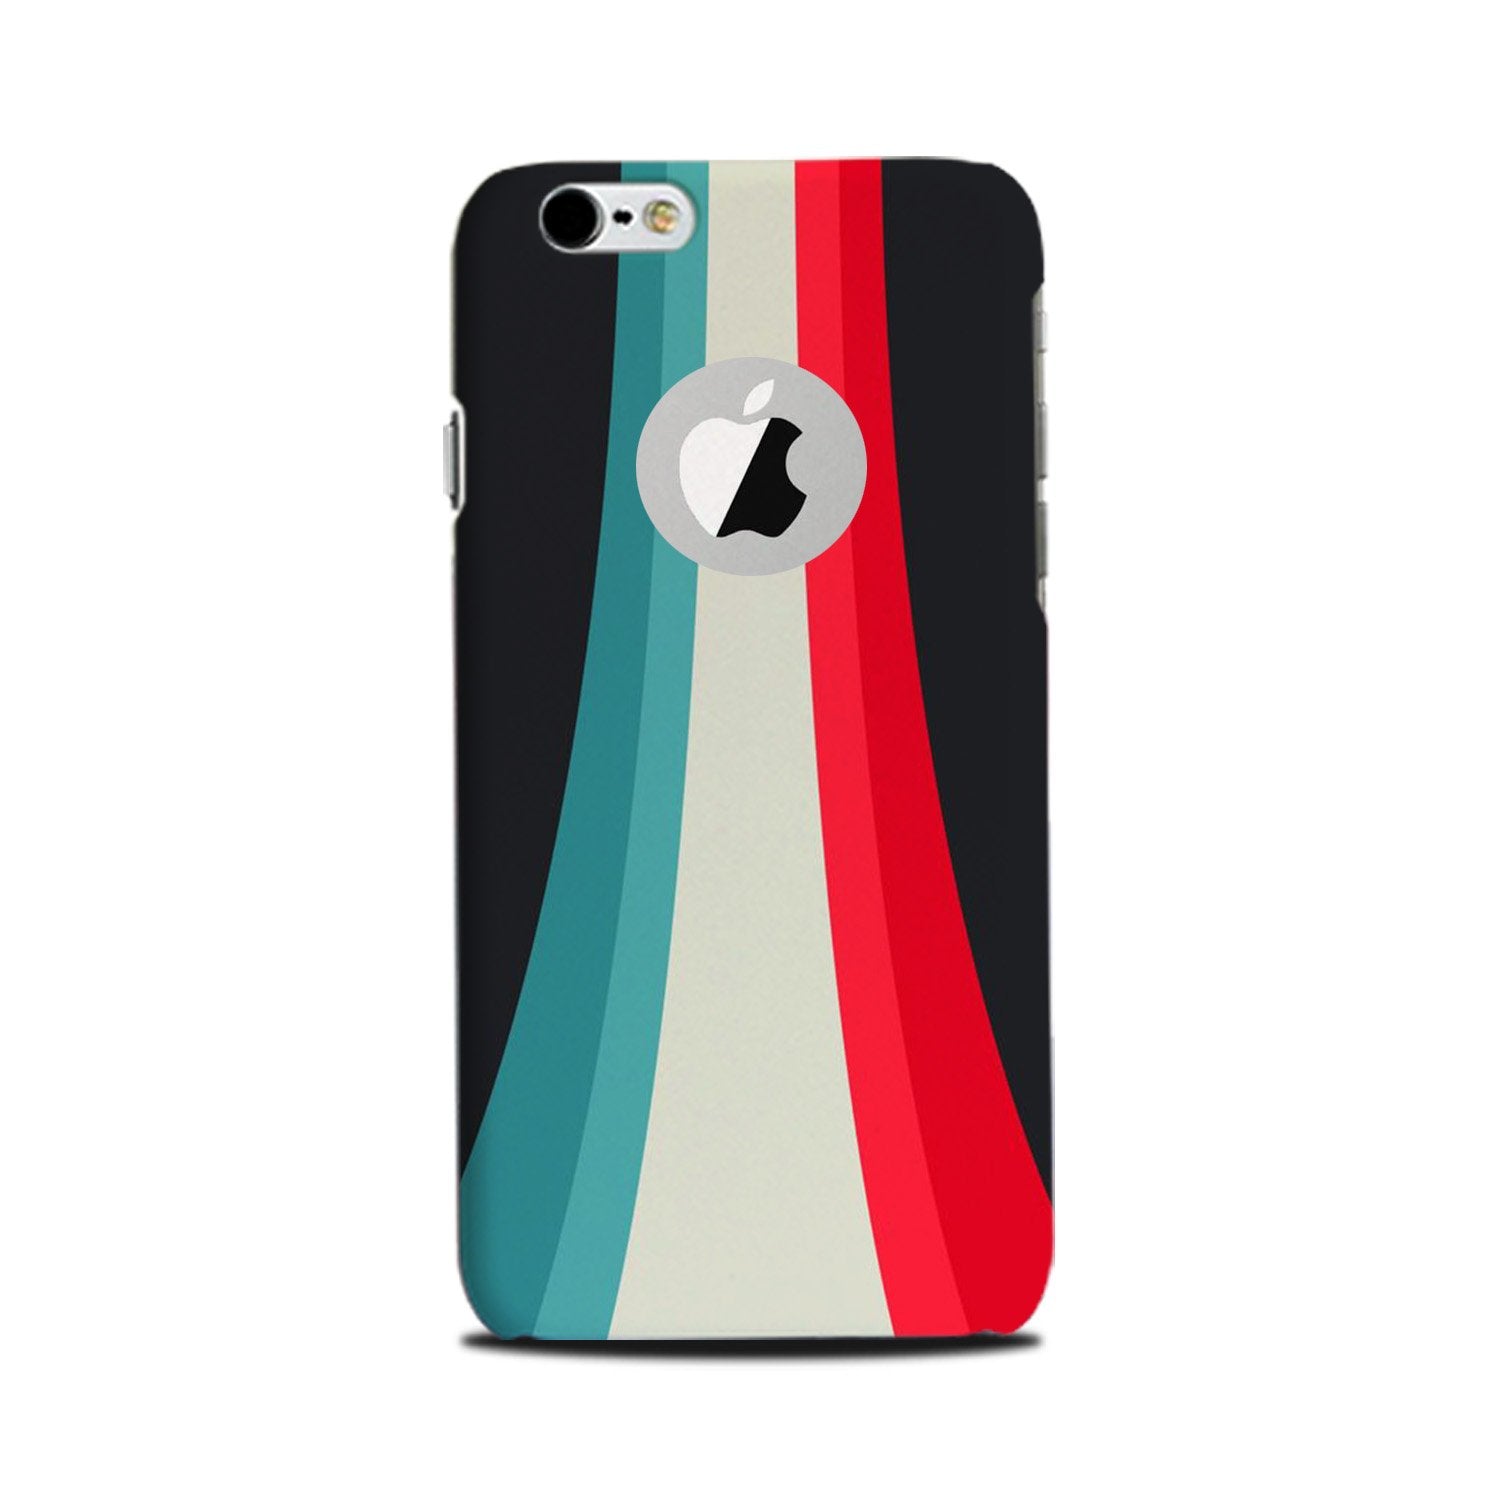 Slider Case for iPhone 6 Plus / 6s Plus logo cut  (Design - 189)